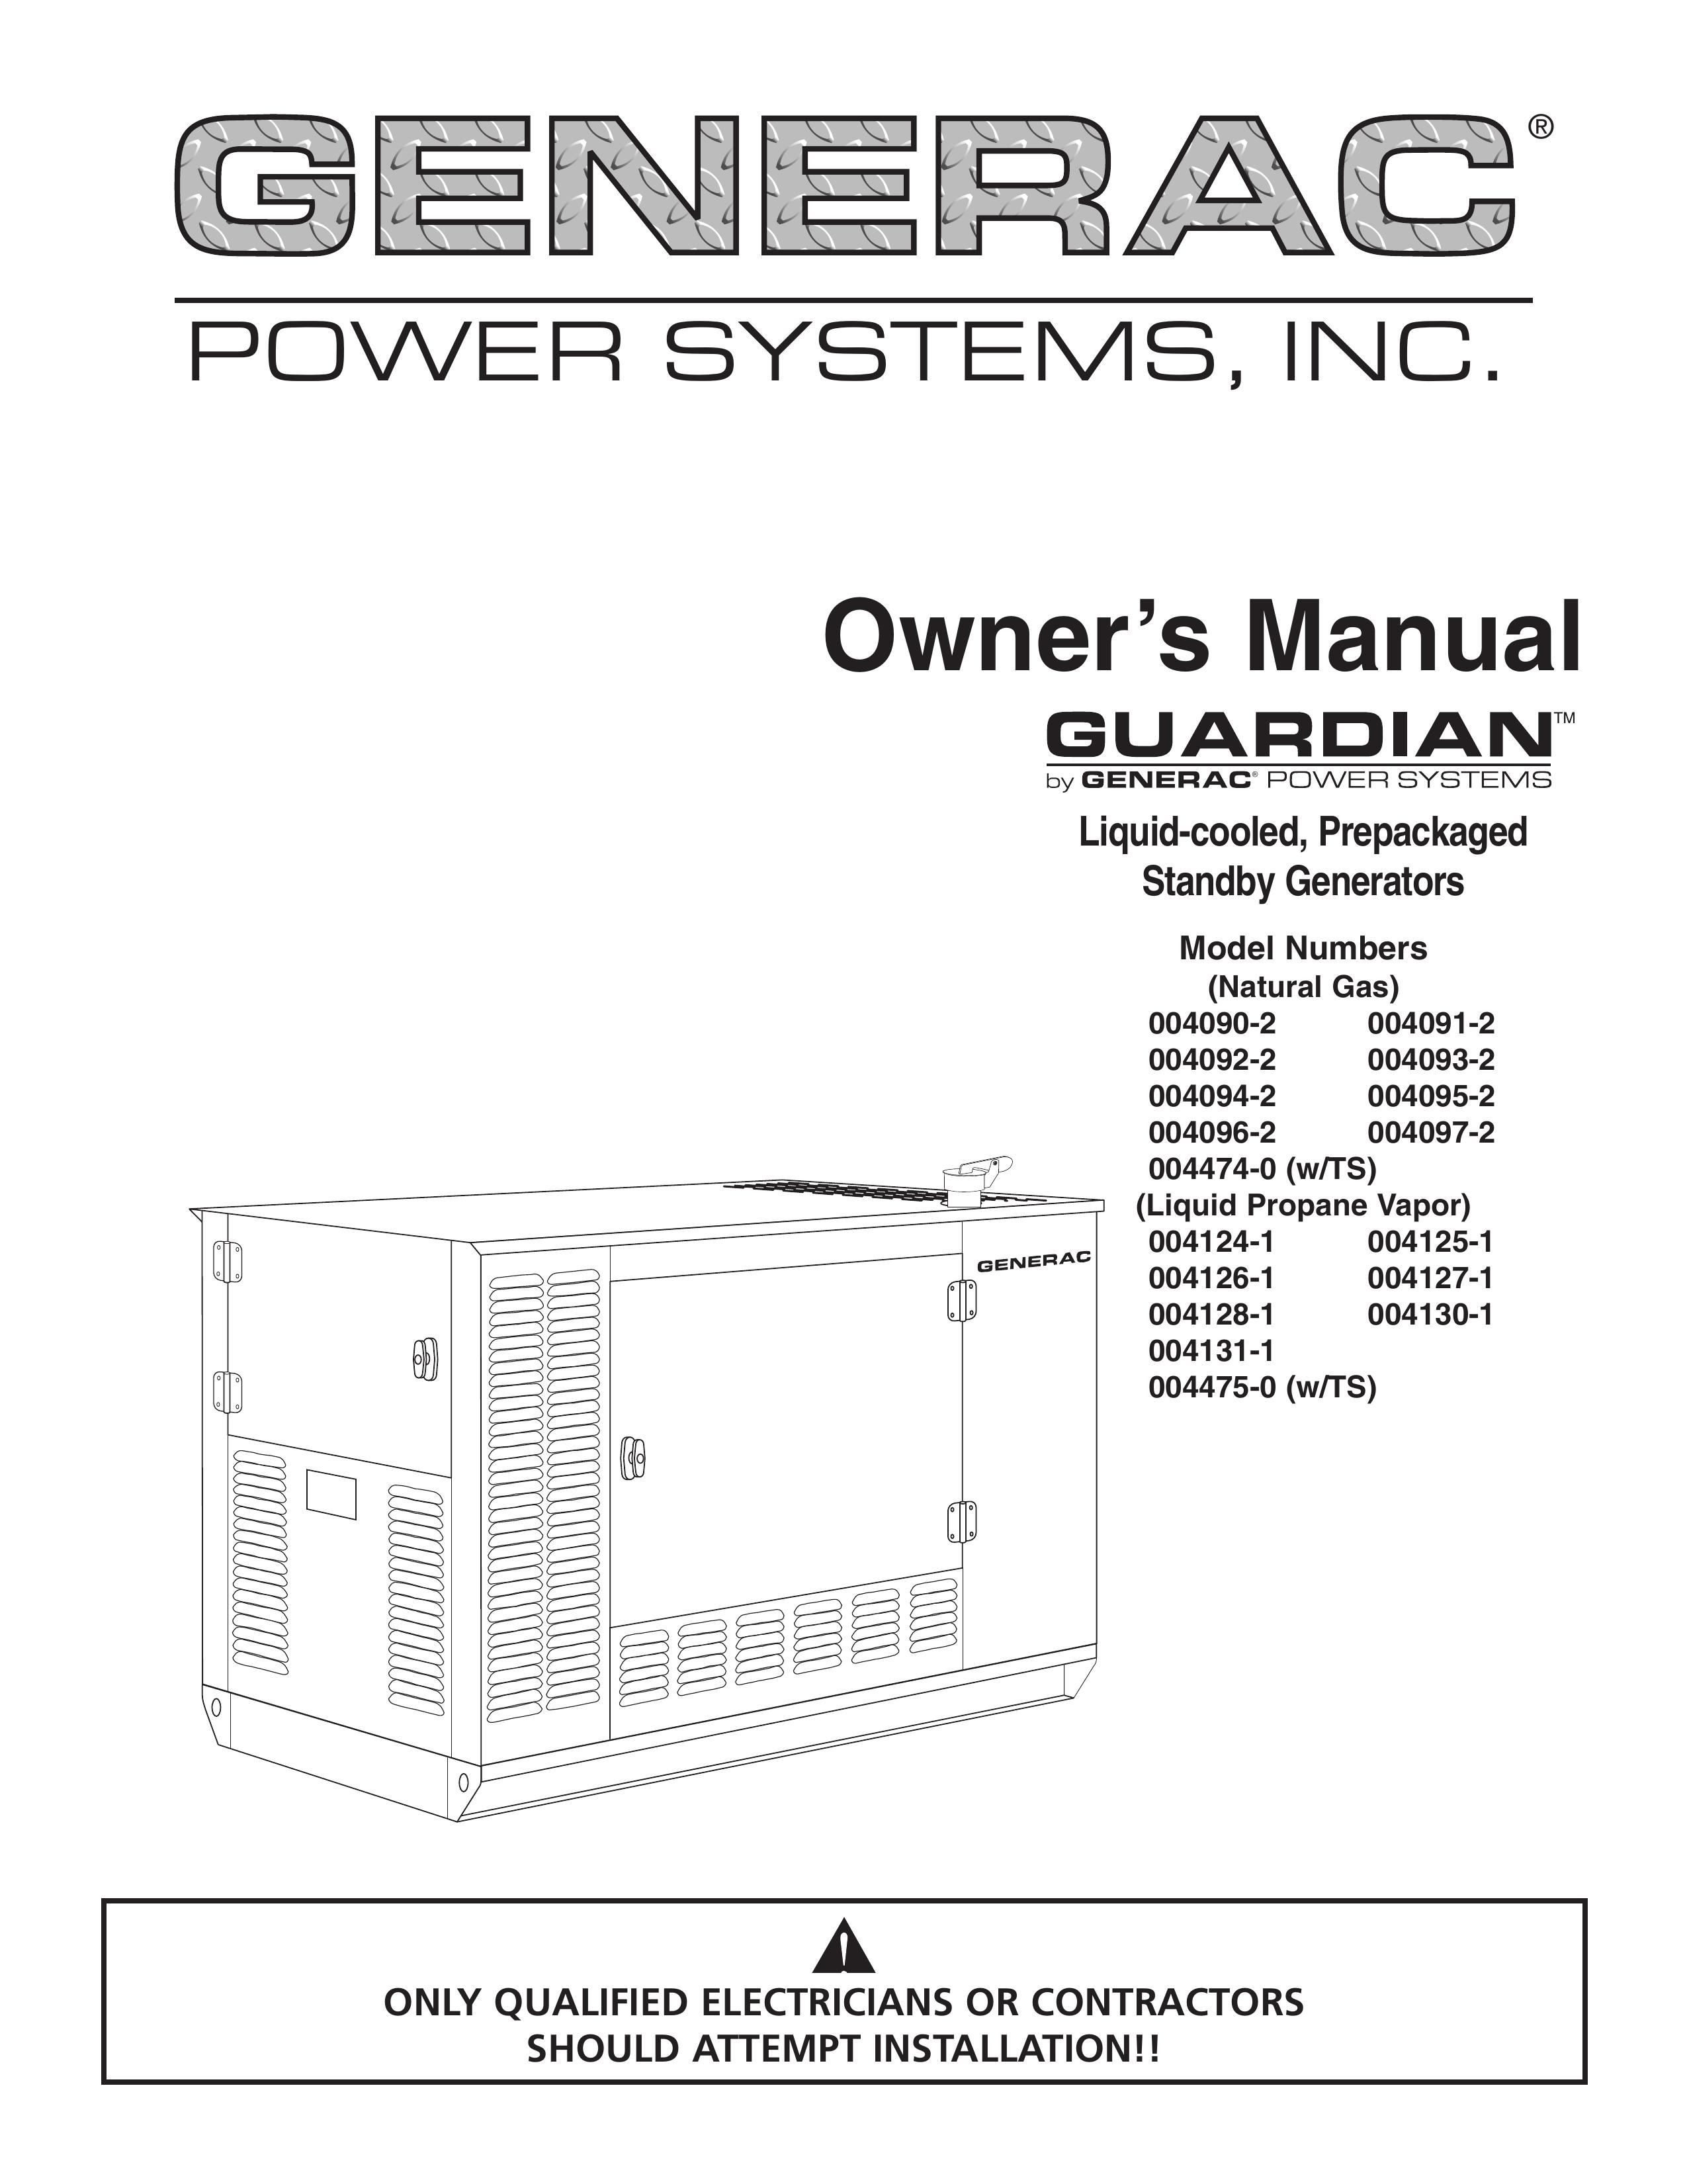 Generac 004090-2, 004091-2, 004092-2, 004093-2, 004094-2, 004095-2, 004096-2, 004097-2, 004474-0, 004124-1, 004125-1, 004126-1, 004127-1, 004128-1, 004130-1, 004131-1, 004475-0 Portable Generator User Manual